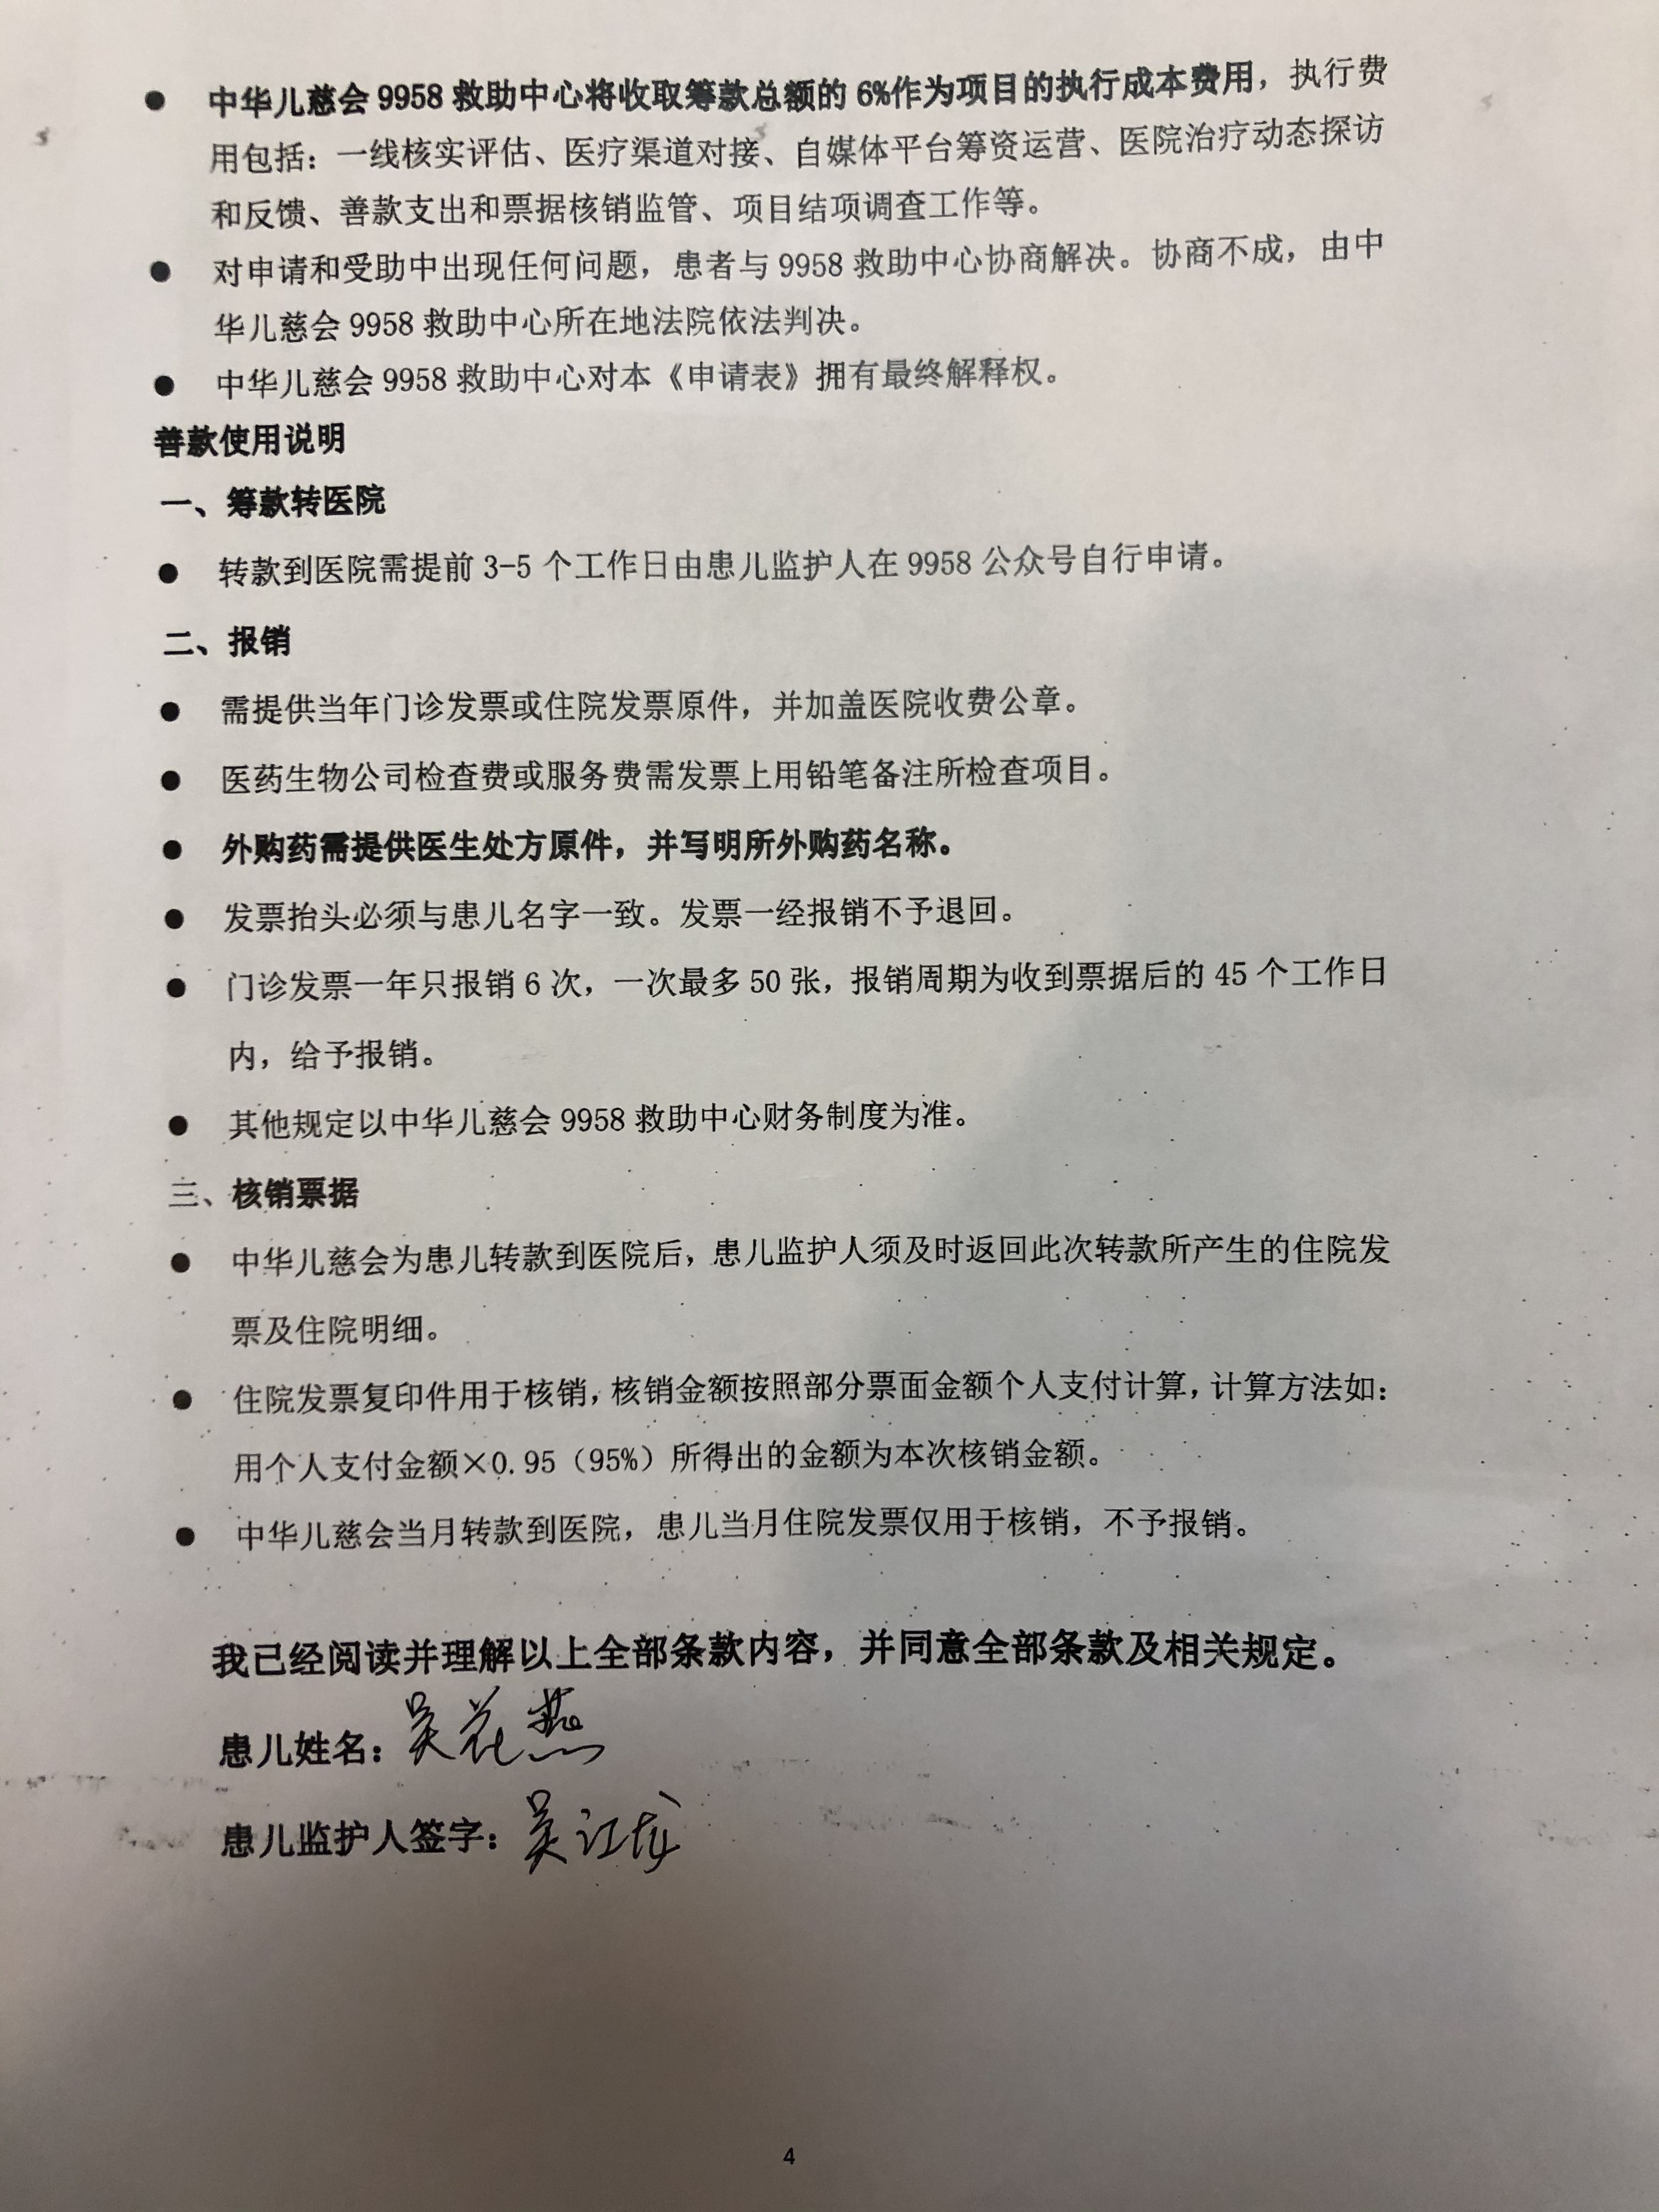 9958称吴花燕救助申请表为弟弟代签 弟弟患有精神病